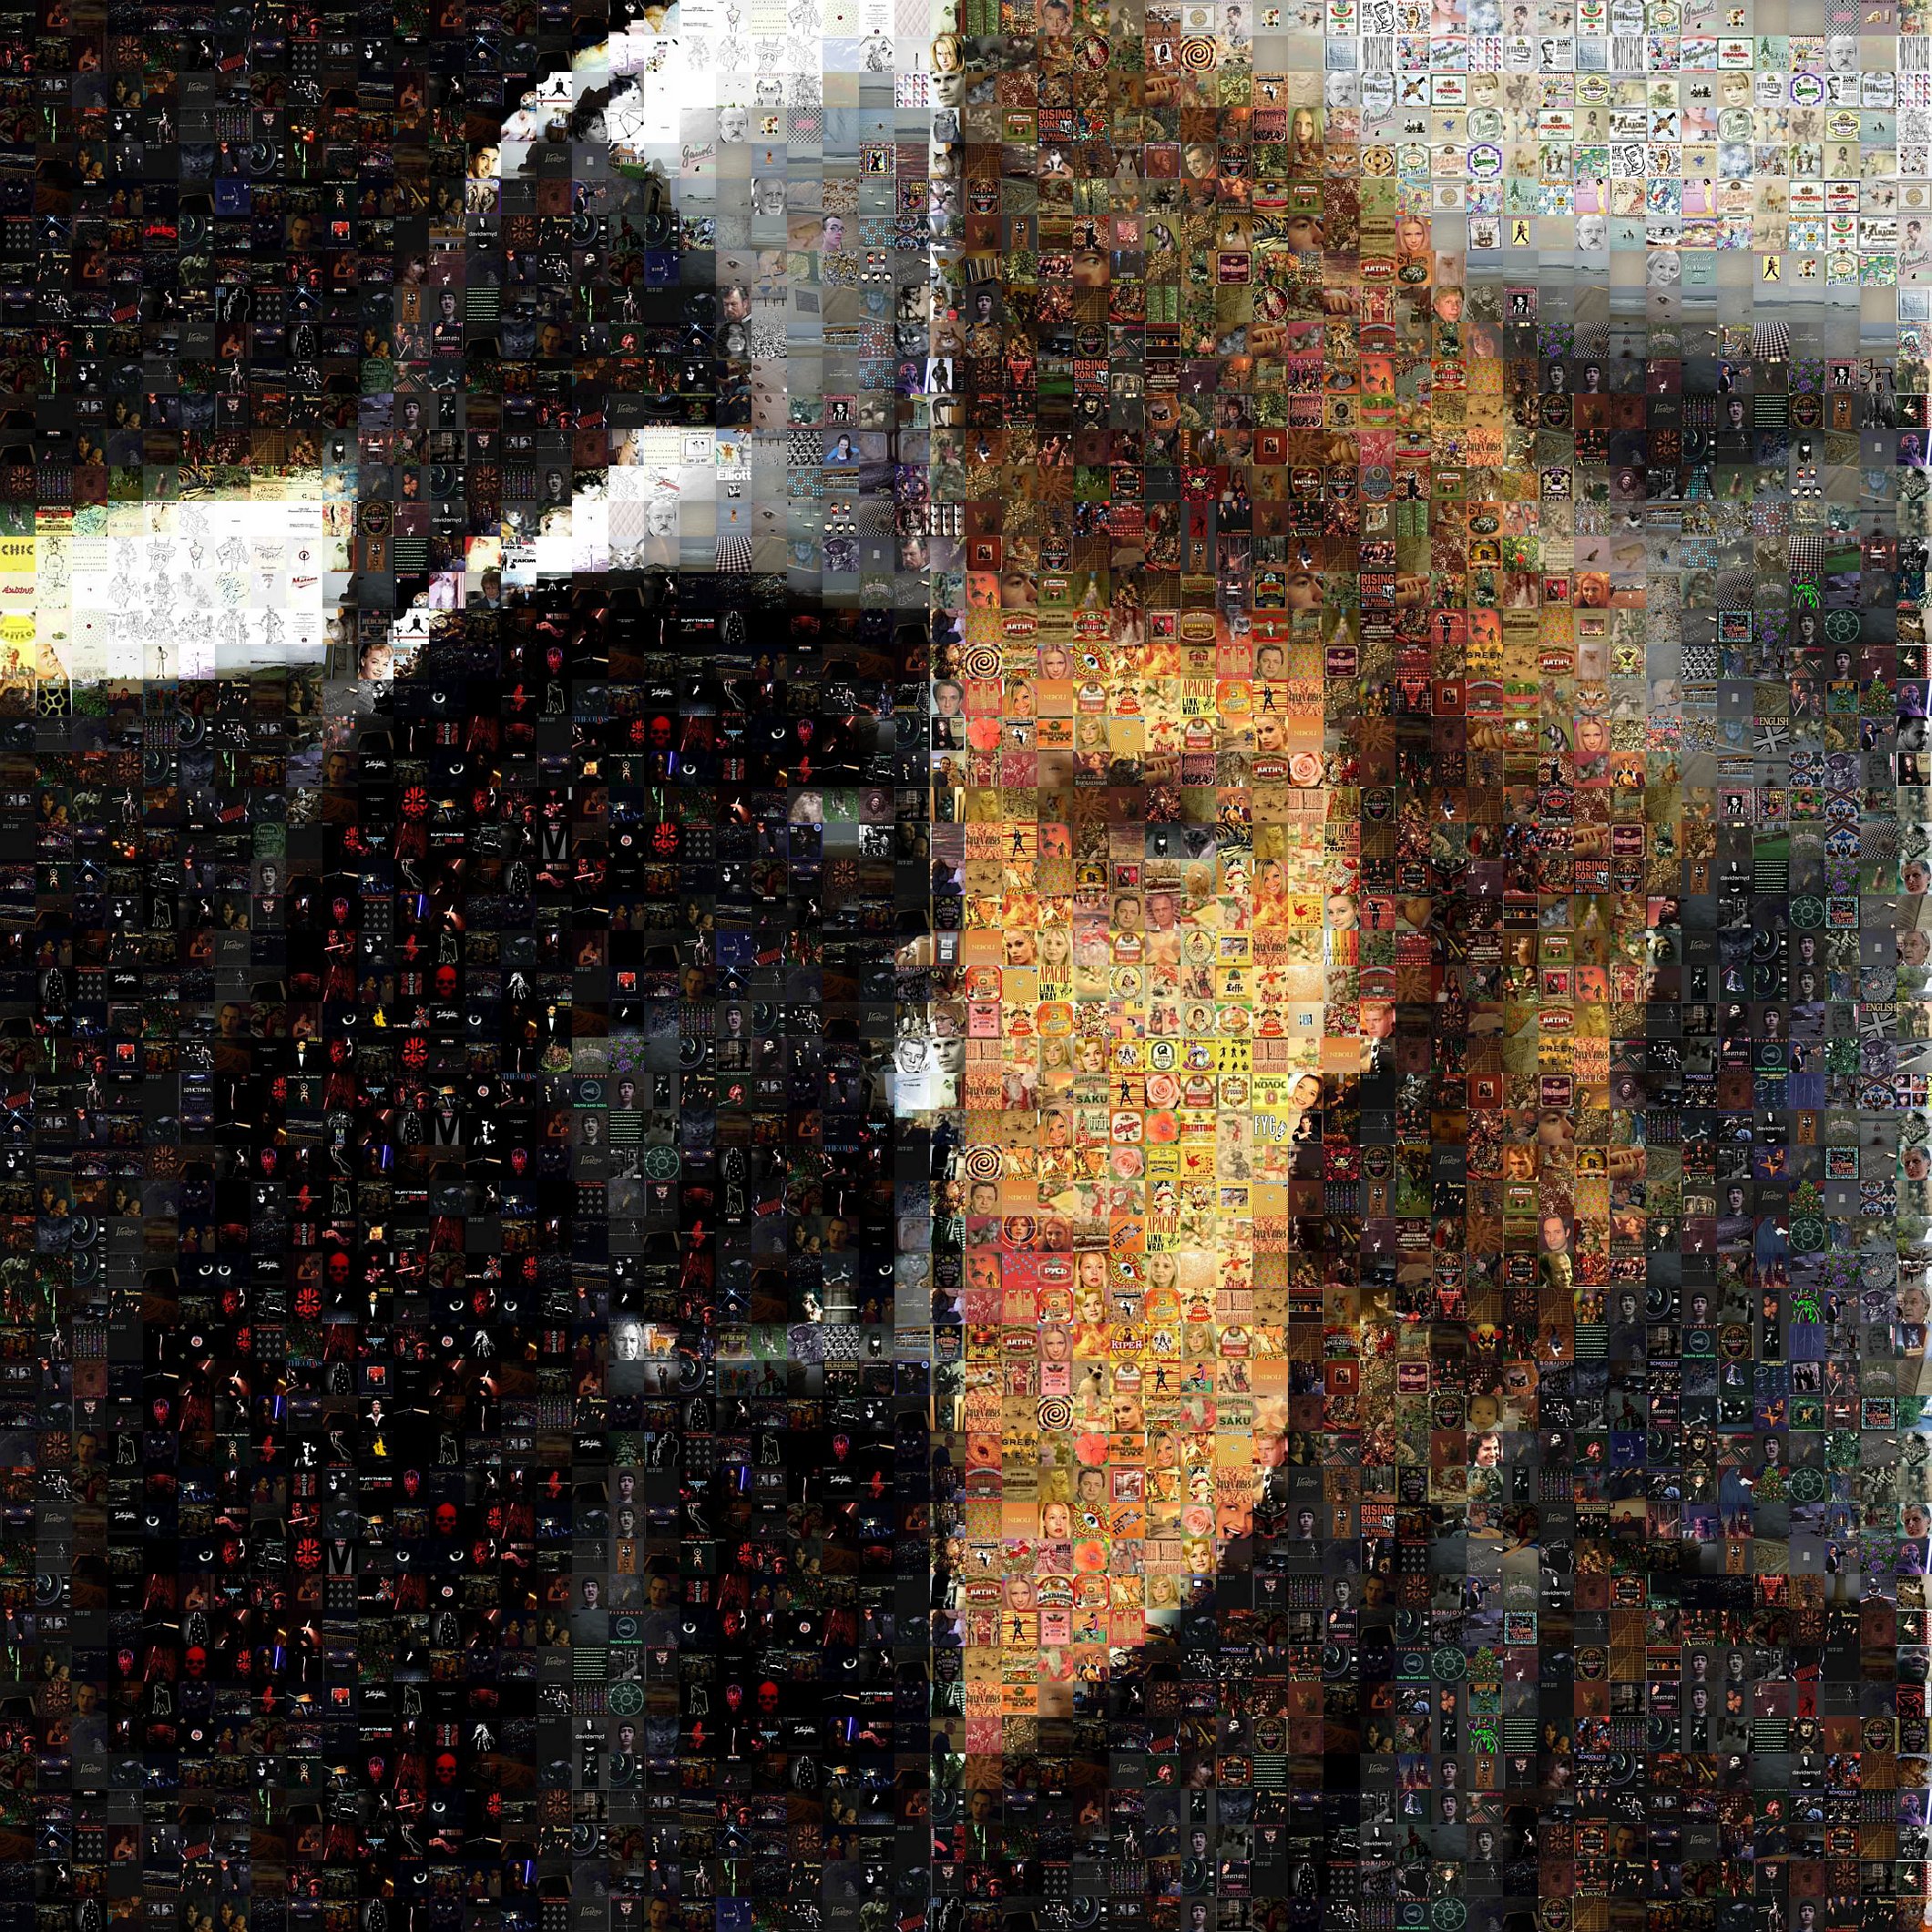 Darth Vader And Anakain Skywalker